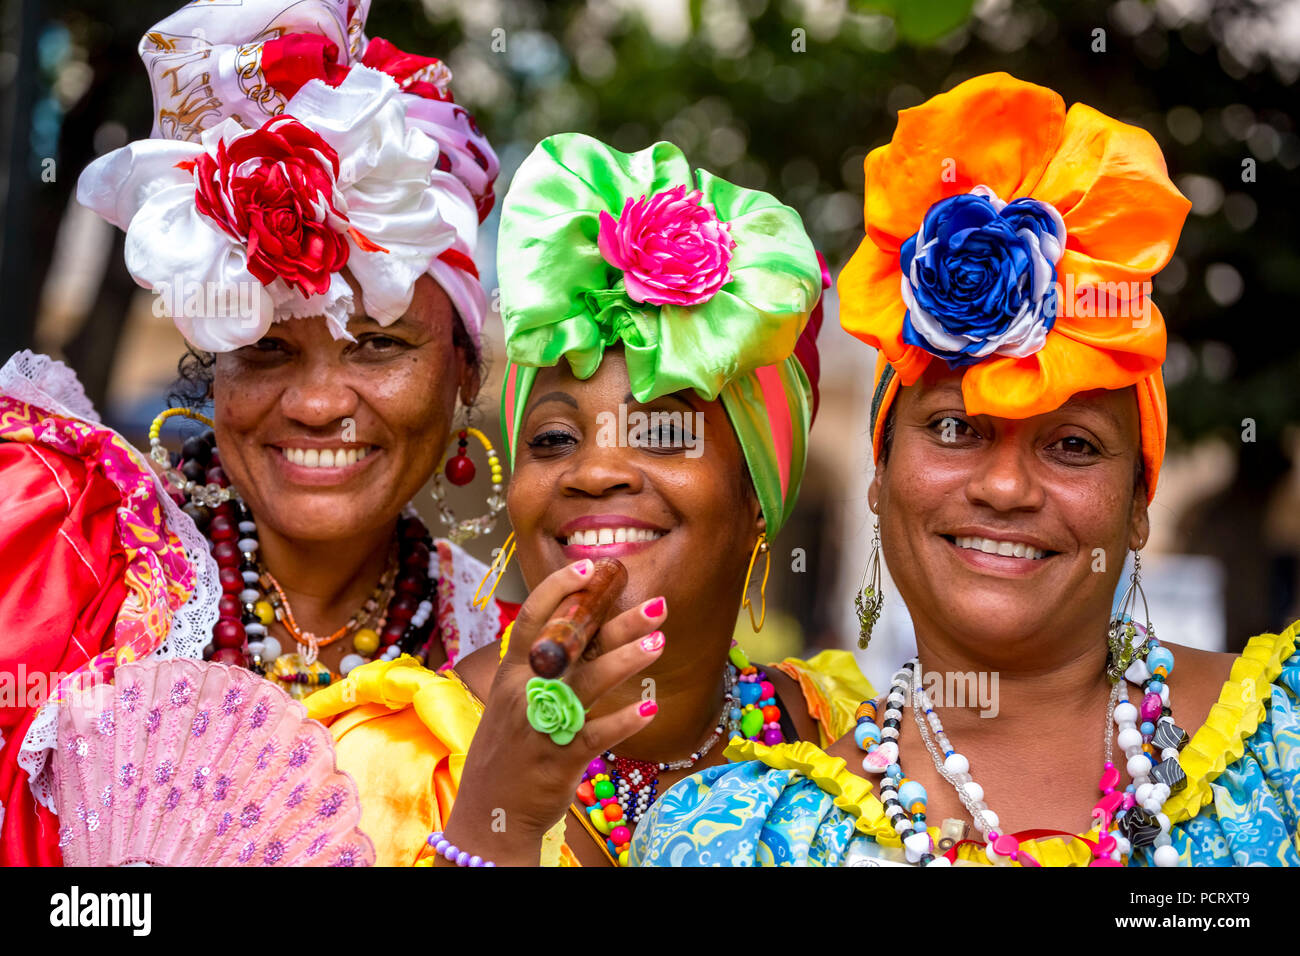 Drei kubanischen Schönheiten auf den Straßen der Altstadt von Havanna in ihren bunten Spanisch inspirierte Kostüme, La Habana, Kuba, Karibik, Zentralamerika, La Habana, Kuba Stockfoto